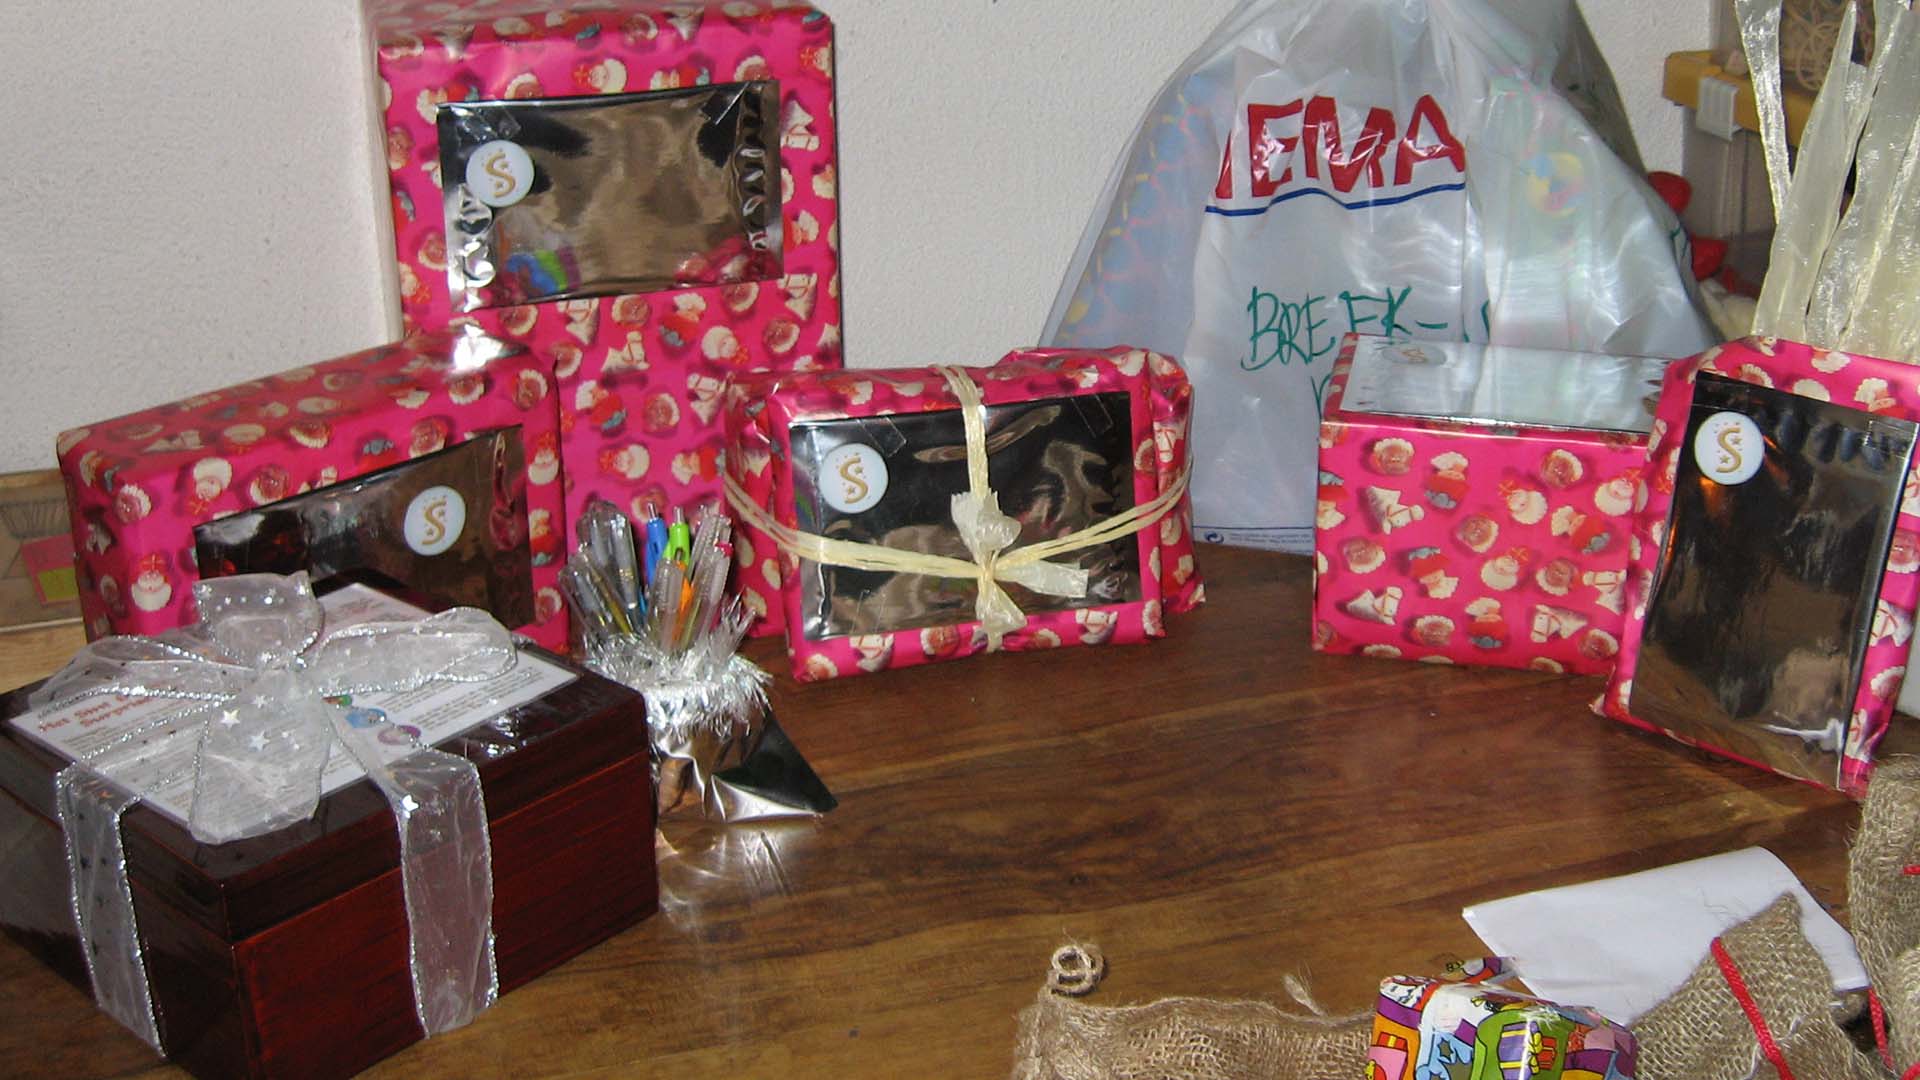 De concept versie van het Sinterklaas Surprisespel - doos met houten kruidnoten en surprisespel pakjes staan klaar aan begin van pakjesavond 2006.